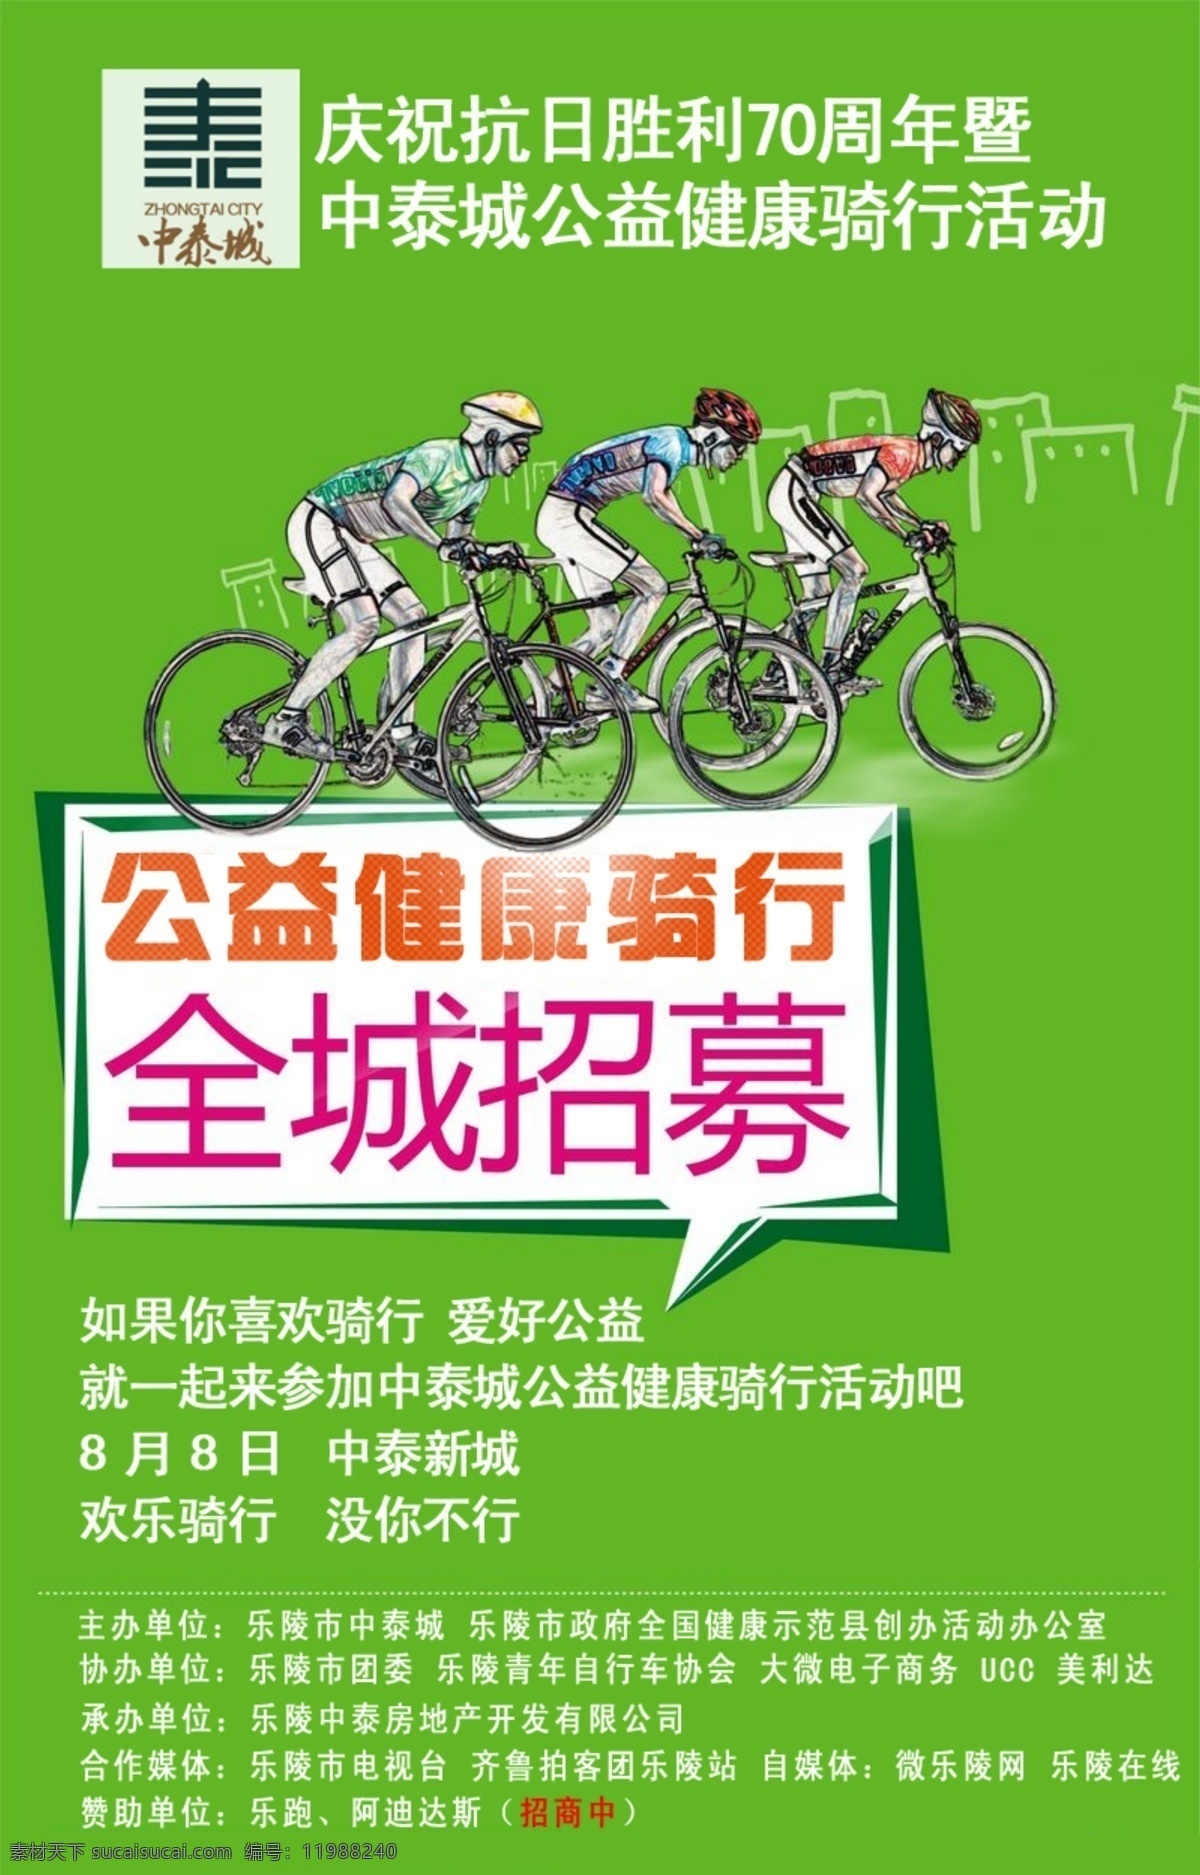 公益 健康 骑 行 活动 骑行 绿色